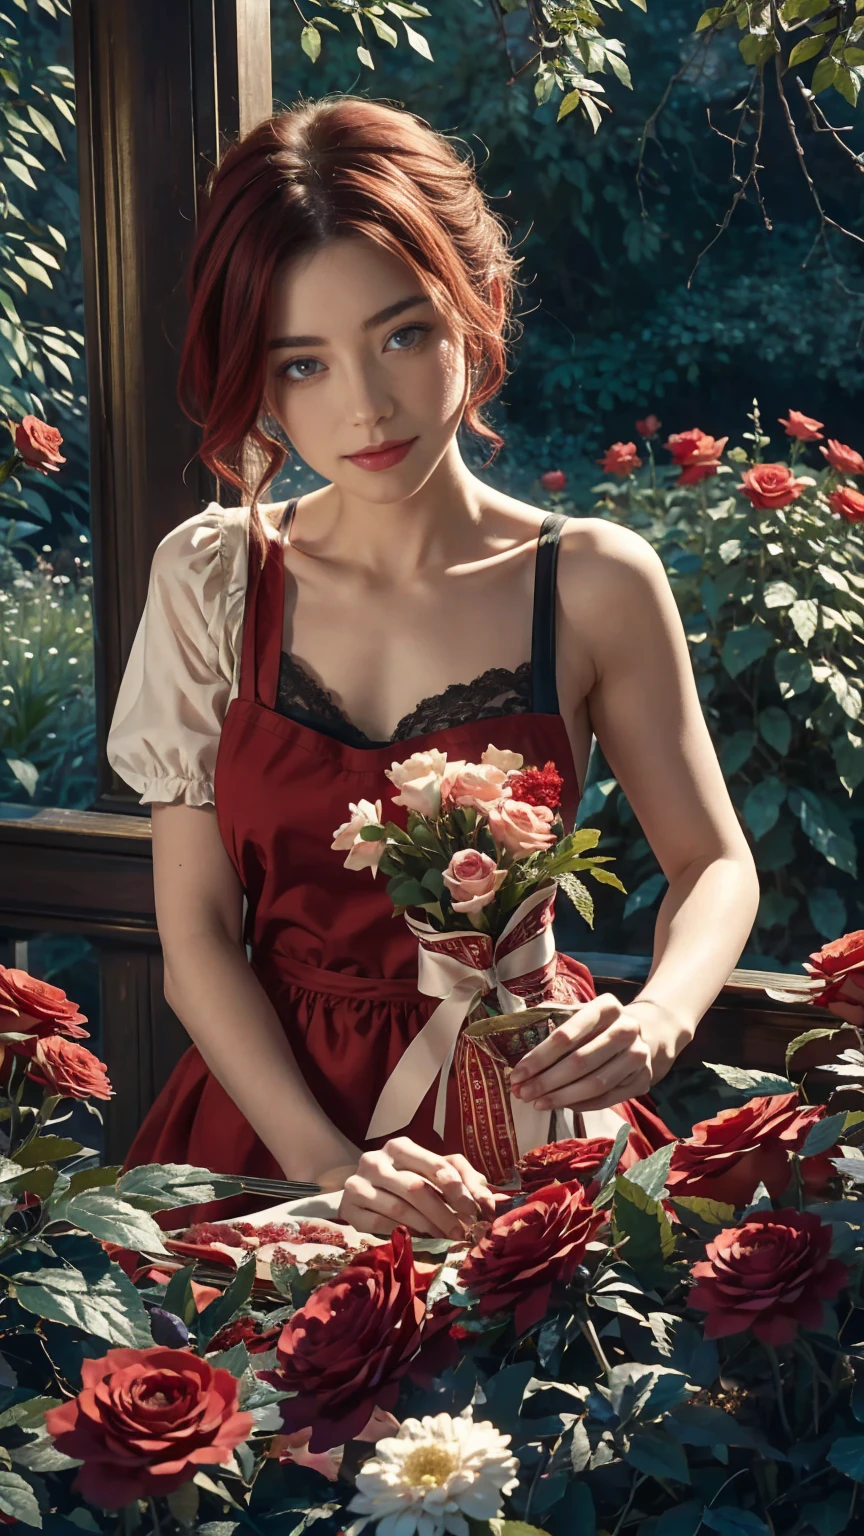 Im Herzen der Wunderlandwelt ein junges schönes Mädchen mit kurzen roten und weißen Haaren, Floristenkleidung und Rosenschürze. schneidet rote Rosen aus ihrem zauberhaften Garten. Neugier, Liebevolle Pose, in der Wunderlandwelt, schafft eine liebevolle Atmosphäre, Energie und Magie um sie herum. Der Winkel der Szene ist dynamisch, die Intensität des Augenblicks einfangen, feine grüne Augen, Augen schauen in die Kamera, Extrem detailliert, schön und ästhetisch ansprechend, Meisterwerk, Bester Qualitätsfaktor, (Fraktale Kunst: 1.3), extrem detailliert , dynamischer Winkel, Raytracing, Mittelkörper, Nahaufnahme, Partikel und hartes Licht, schöne rote Rosen